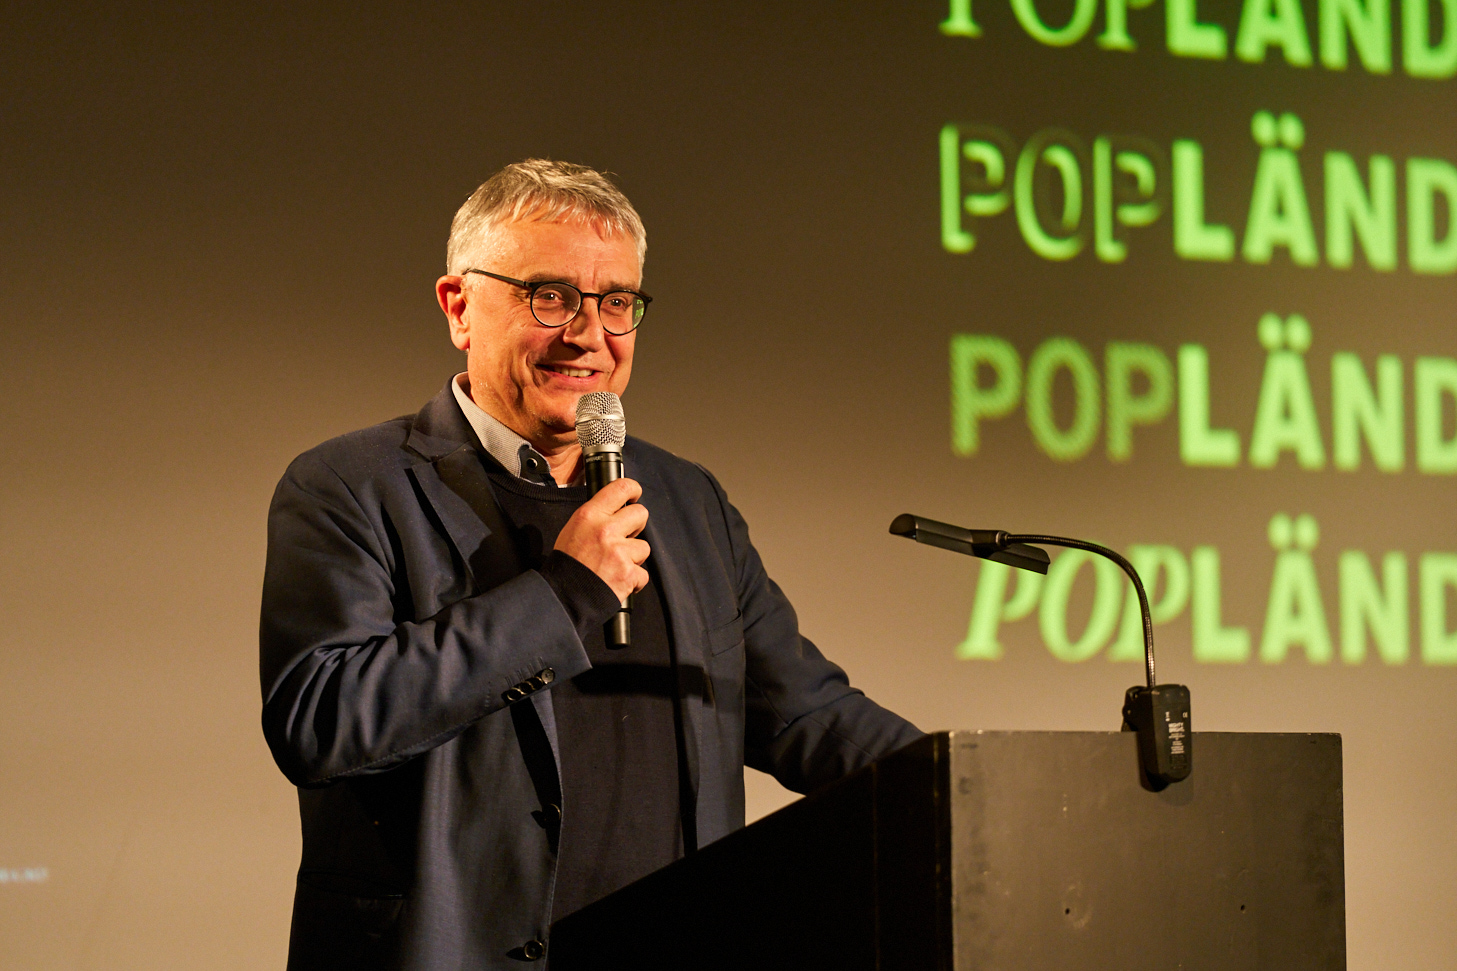 Das Bild zeigt den Staatssekretär Arne Braun. Er steht in einem schwarzen Anzug mit schwarzer brille hinter einem Rednerpult und spricht in ein Mikro. Hinter ihm ist eine Projektion des Popländ-Logos zu sehen.